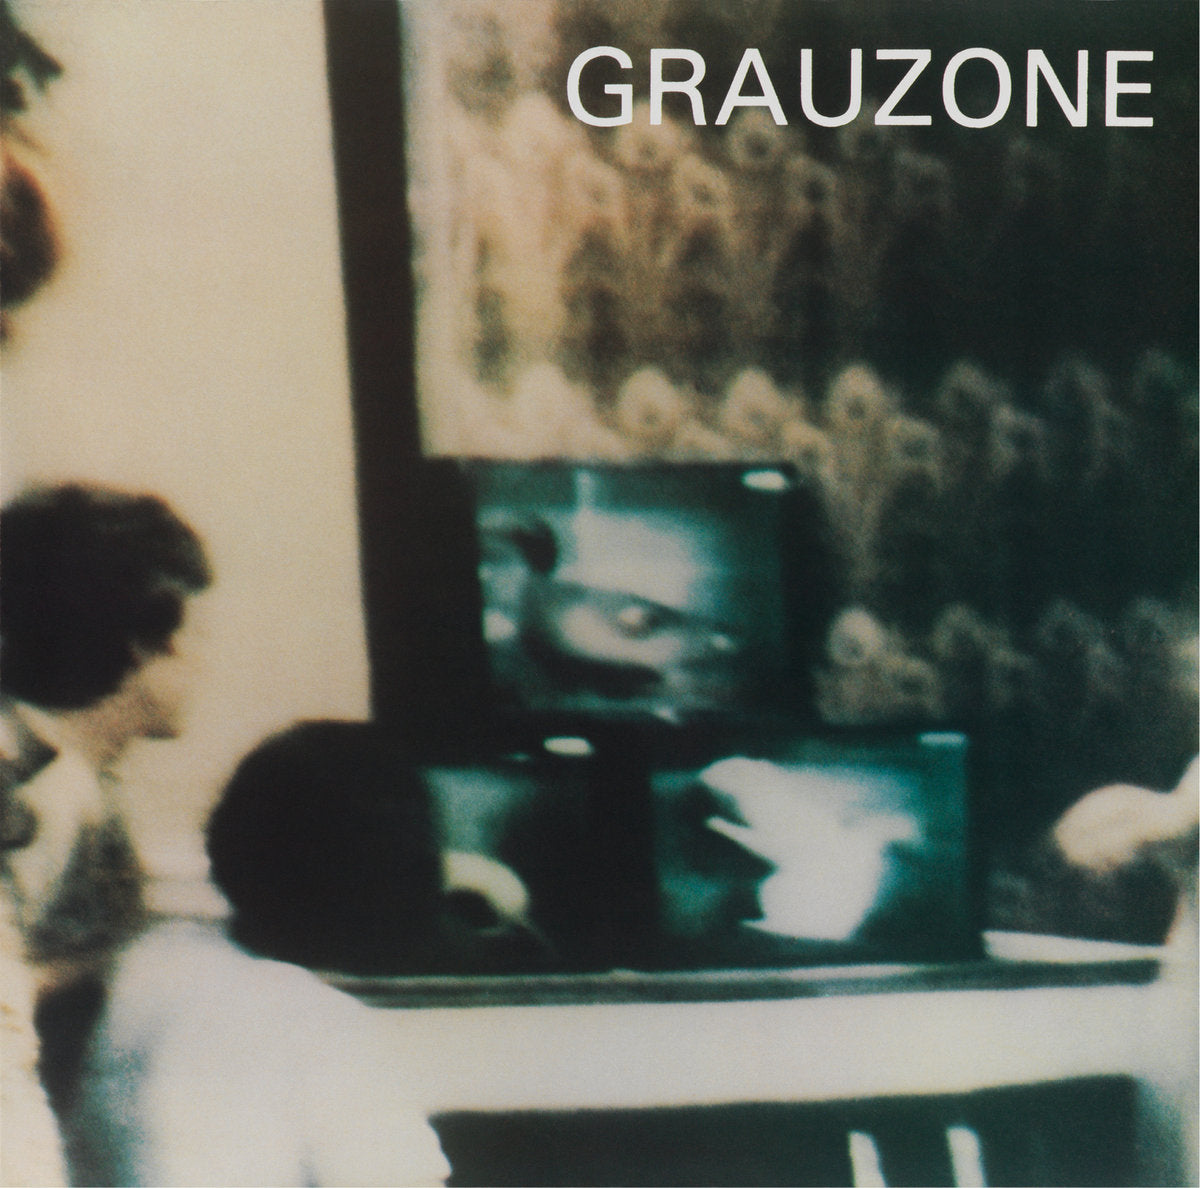 Grauzone - Grauzone (40 Years Anniversary Edition 2LP)